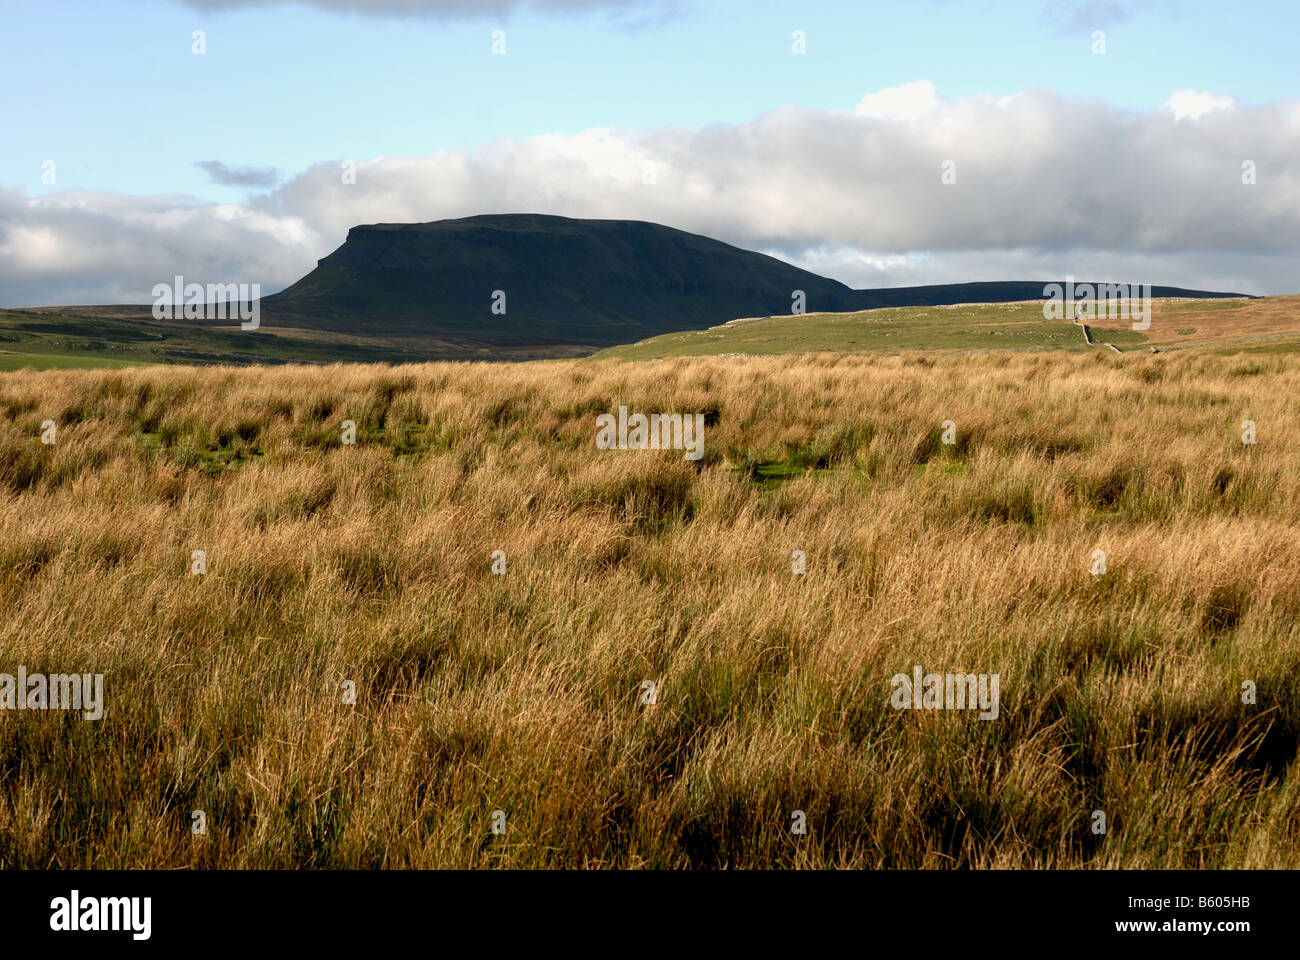 Penyghent montagna con la brughiera in primo piano,Yorkshire Foto Stock